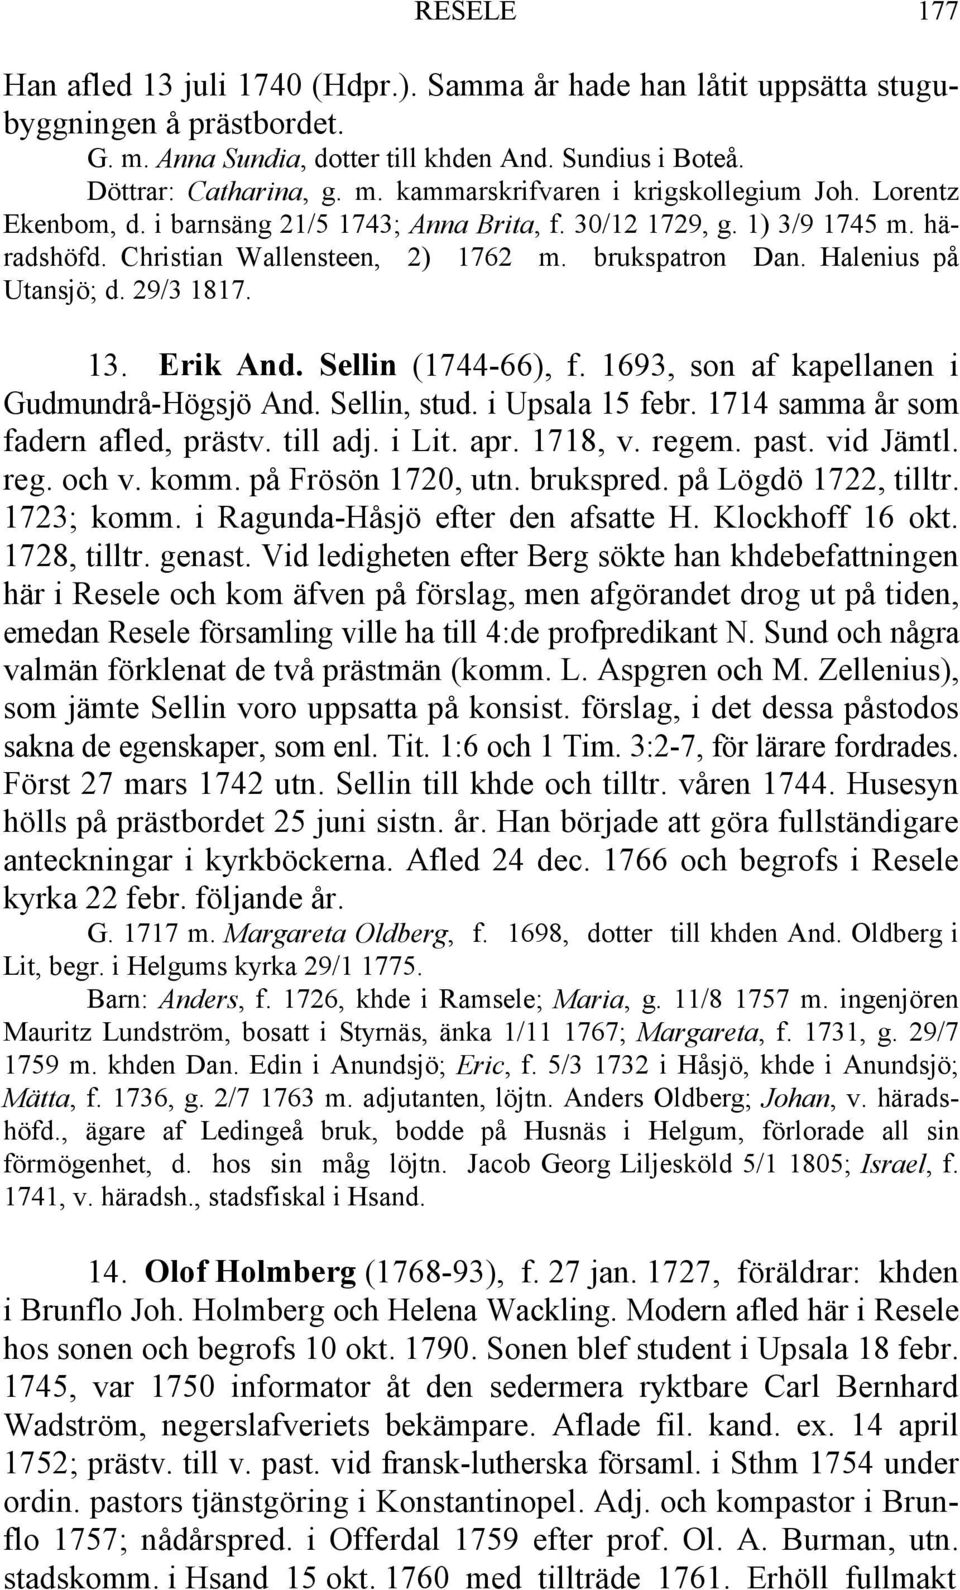 Sellin (1744-66), f. 1693, son af kapellanen i Gudmundrå-Högsjö And. Sellin, stud. i Upsala 15 febr. 1714 samma år som fadern afled, prästv. till adj. i Lit. apr. 1718, v. regem. past. vid Jämtl. reg. och v.